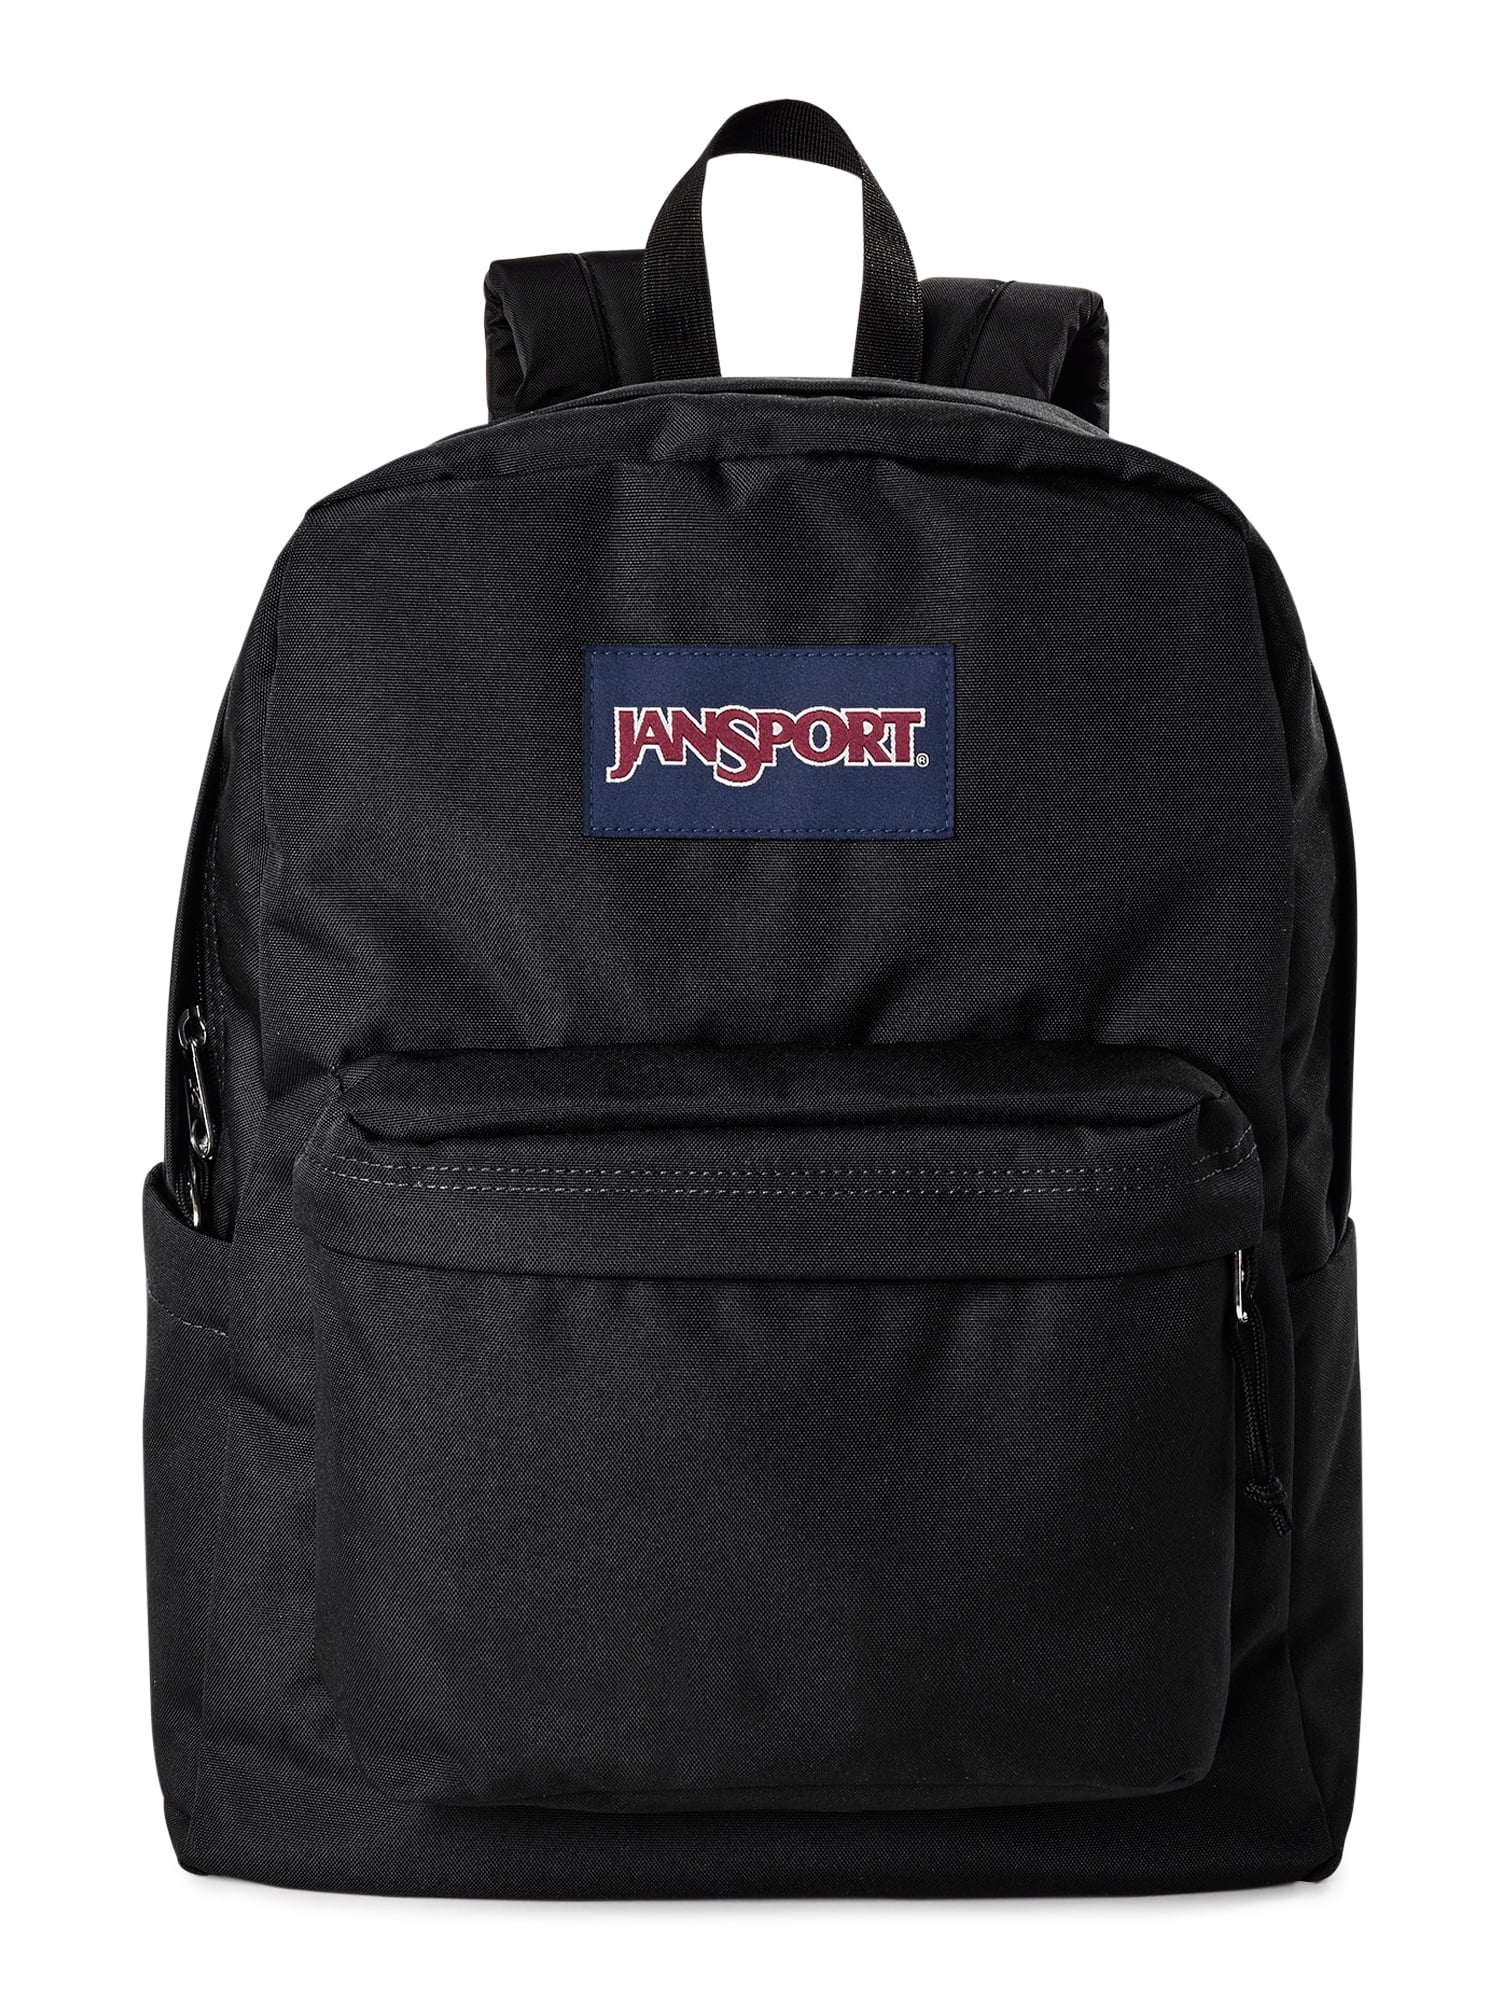 JanSport Unisex SuperBreak Backpack School Bag Black